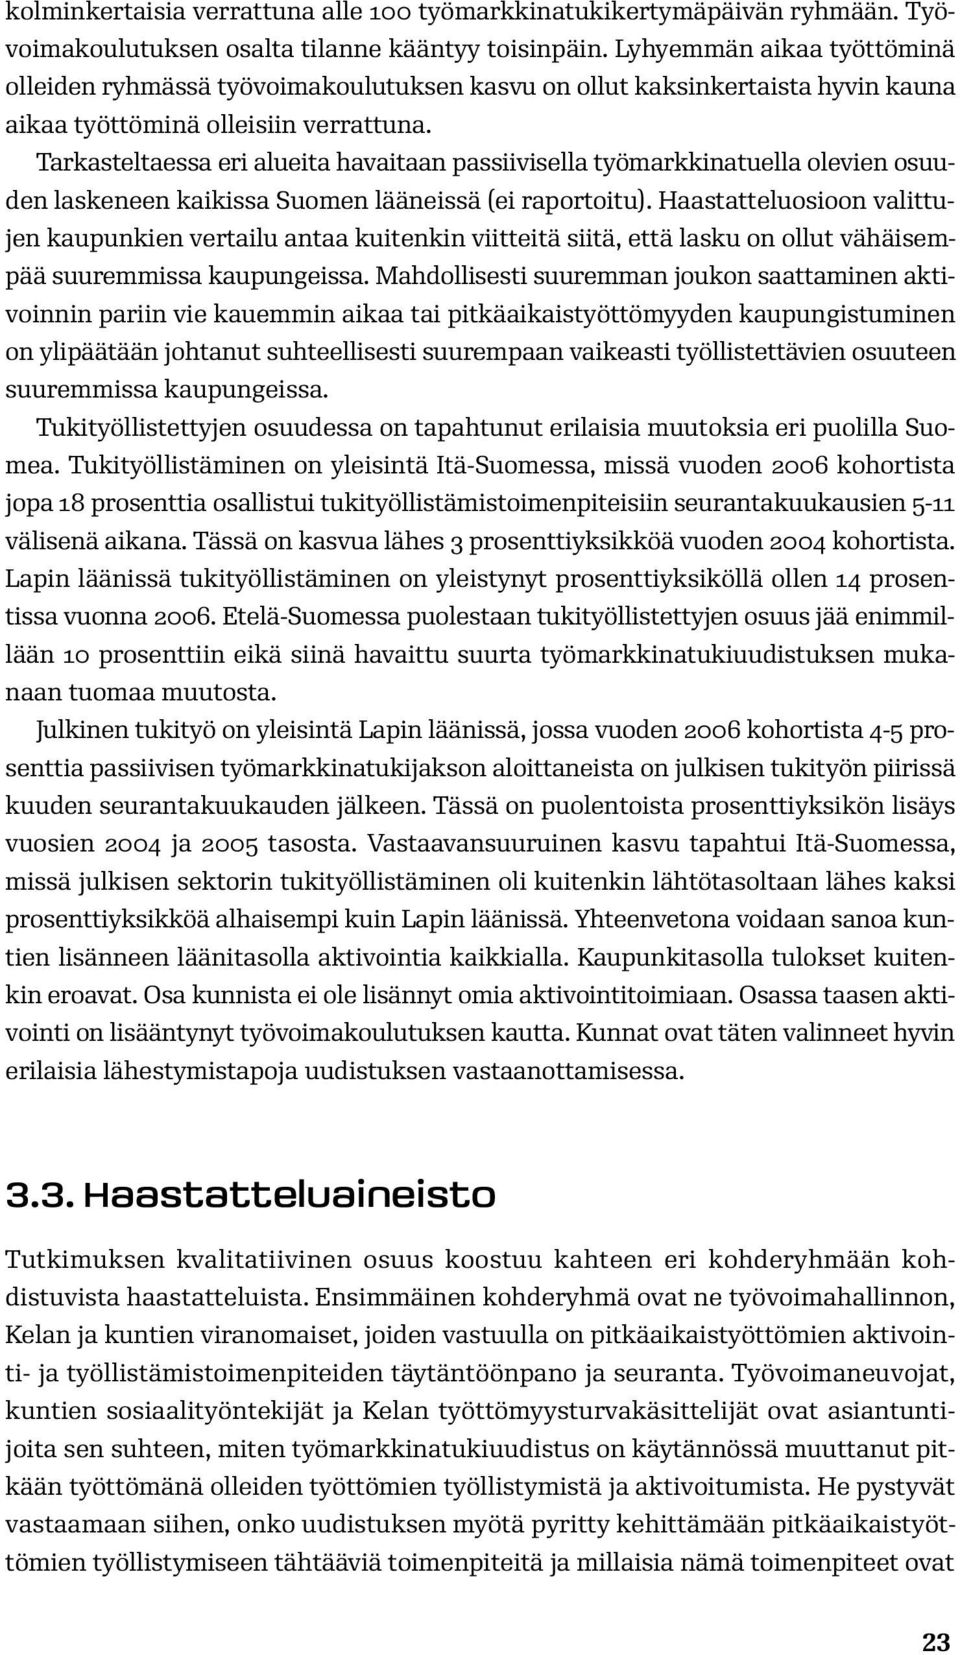 Tarkasteltaessa eri alueita havaitaan passiivisella työmarkkinatuella olevien osuuden laskeneen kaikissa Suomen lääneissä (ei raportoitu).